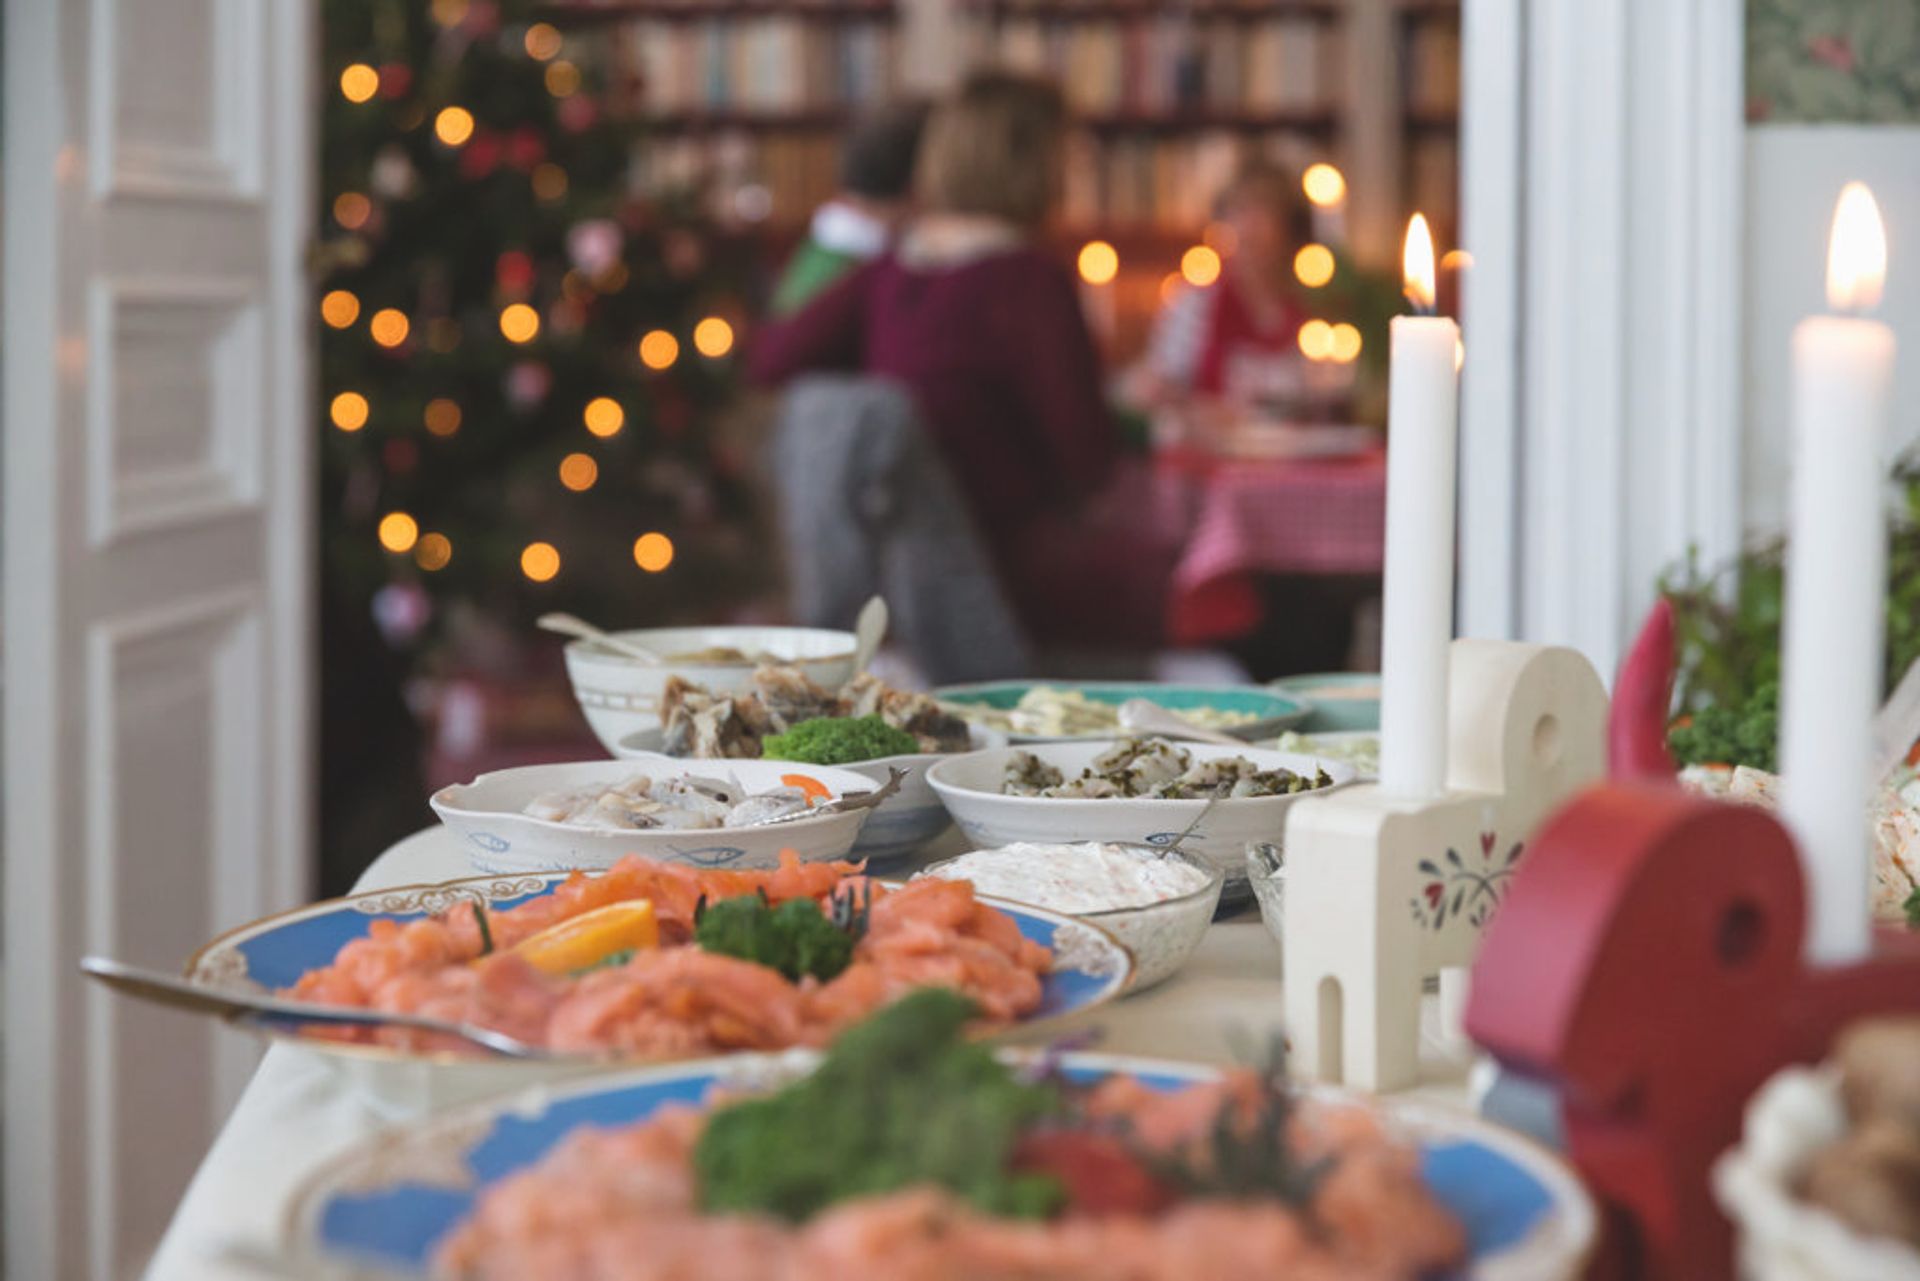 A typical Swedish Christmas food table.